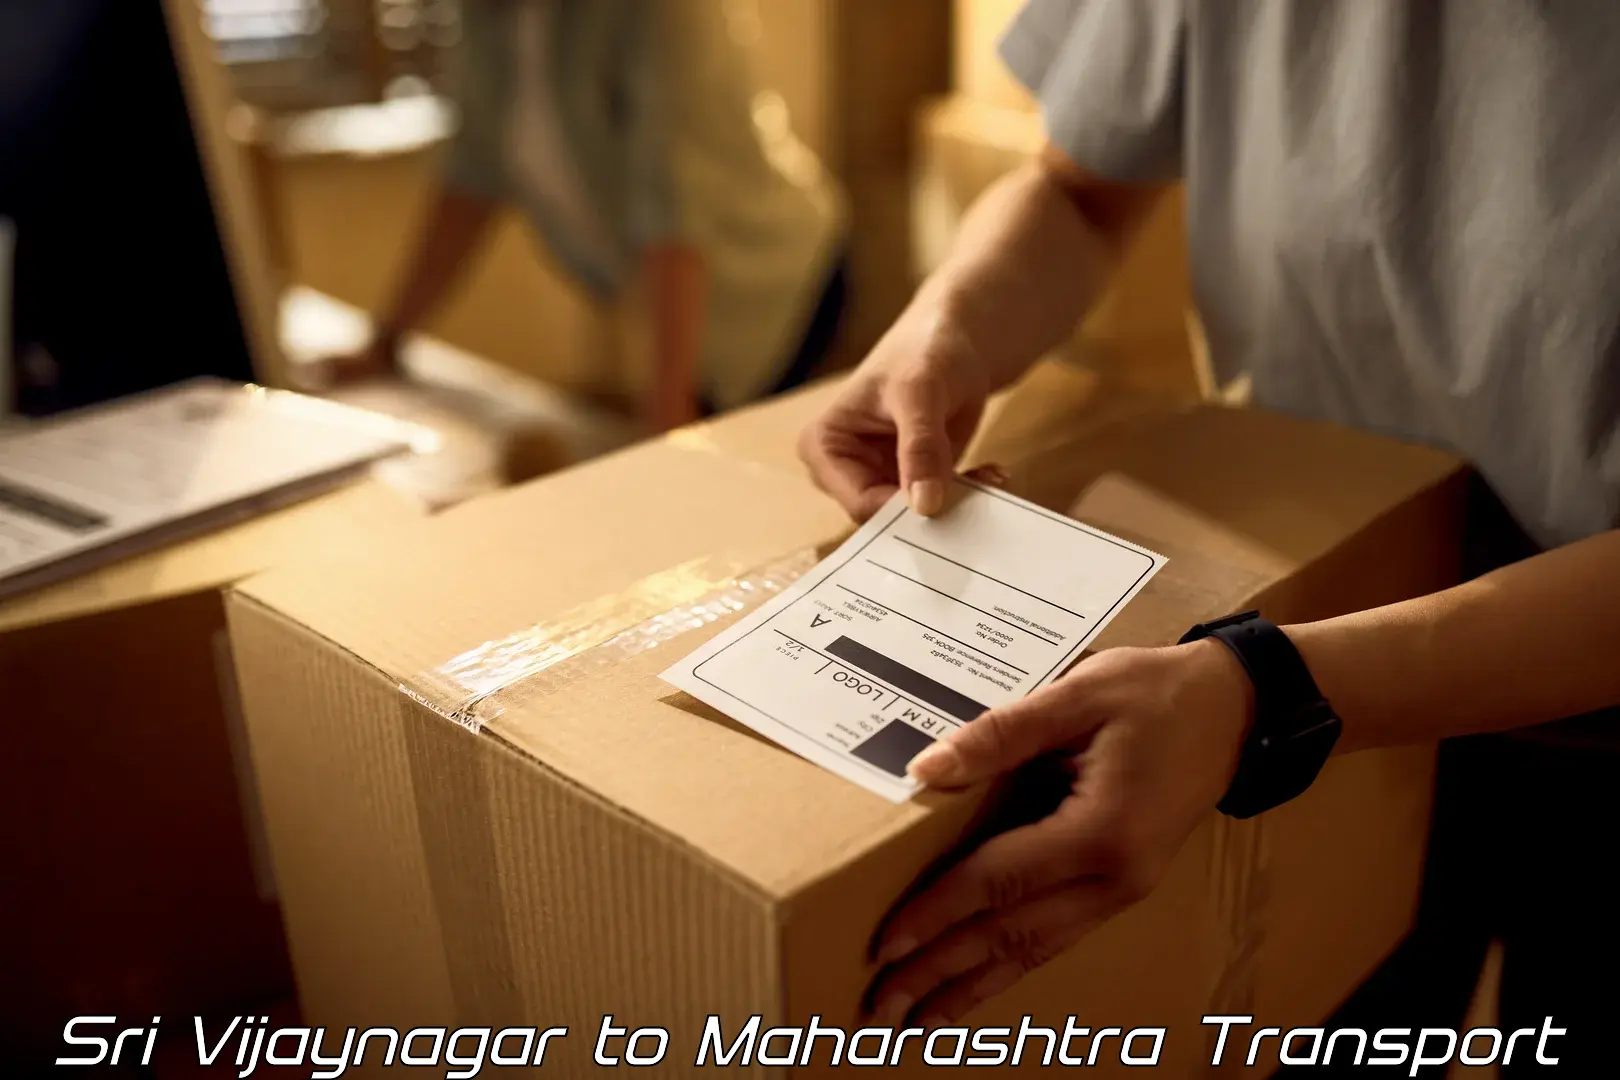 Transportation solution services Sri Vijaynagar to Pandharpur